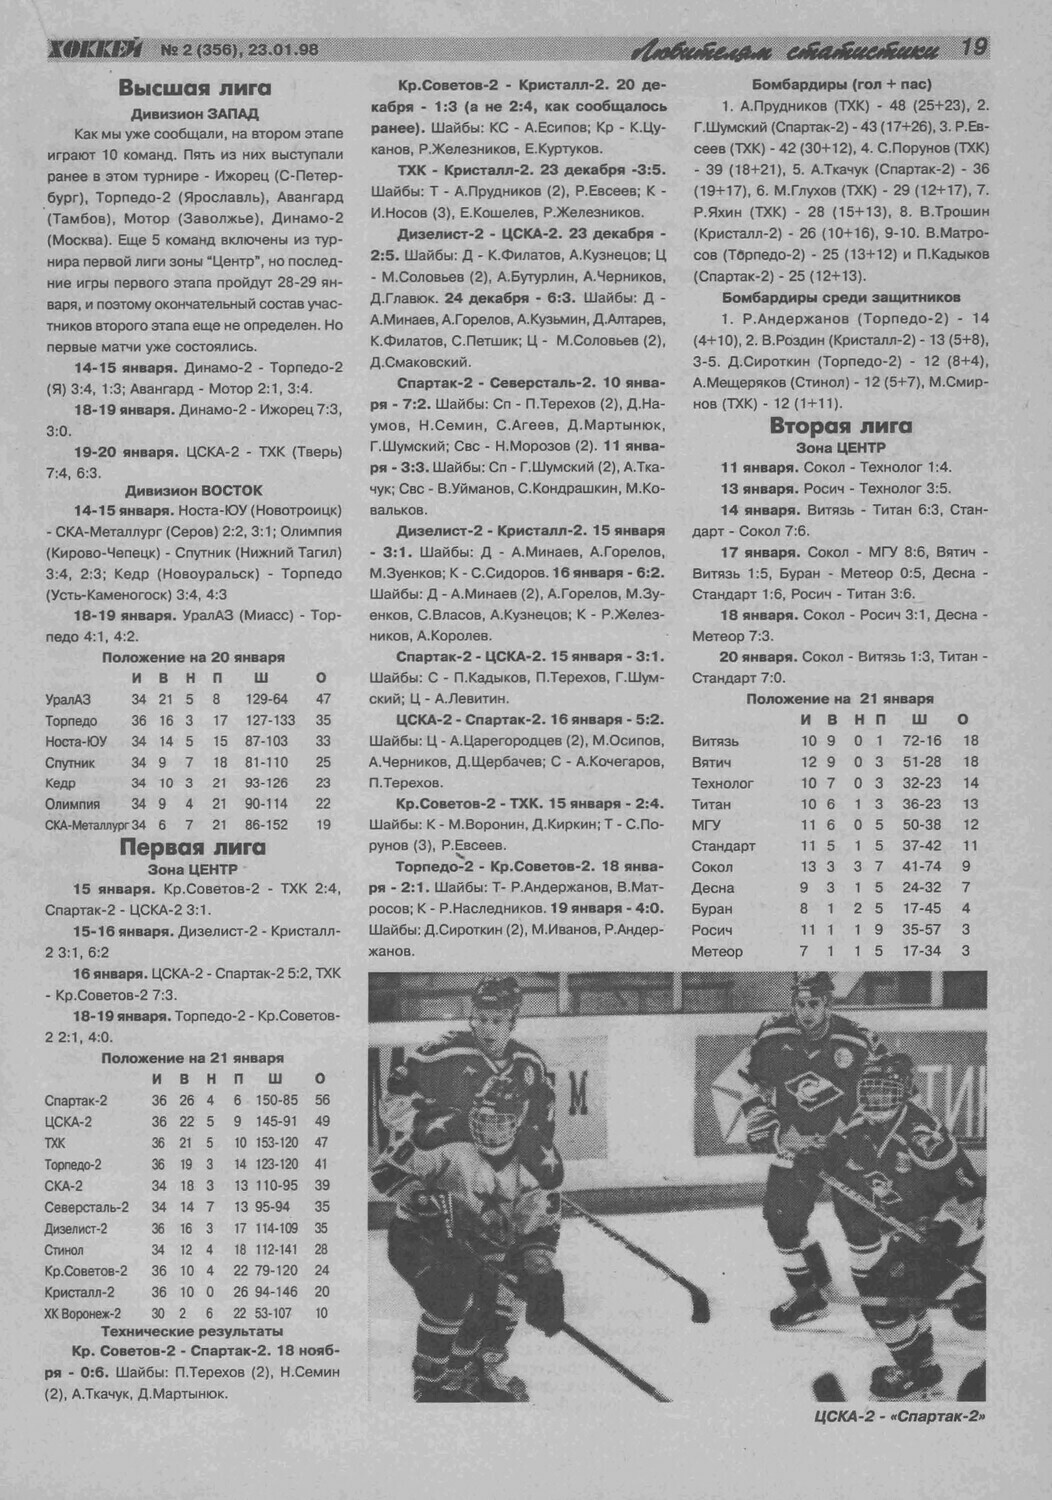 Еженедельник "Хоккей" от 1998г.